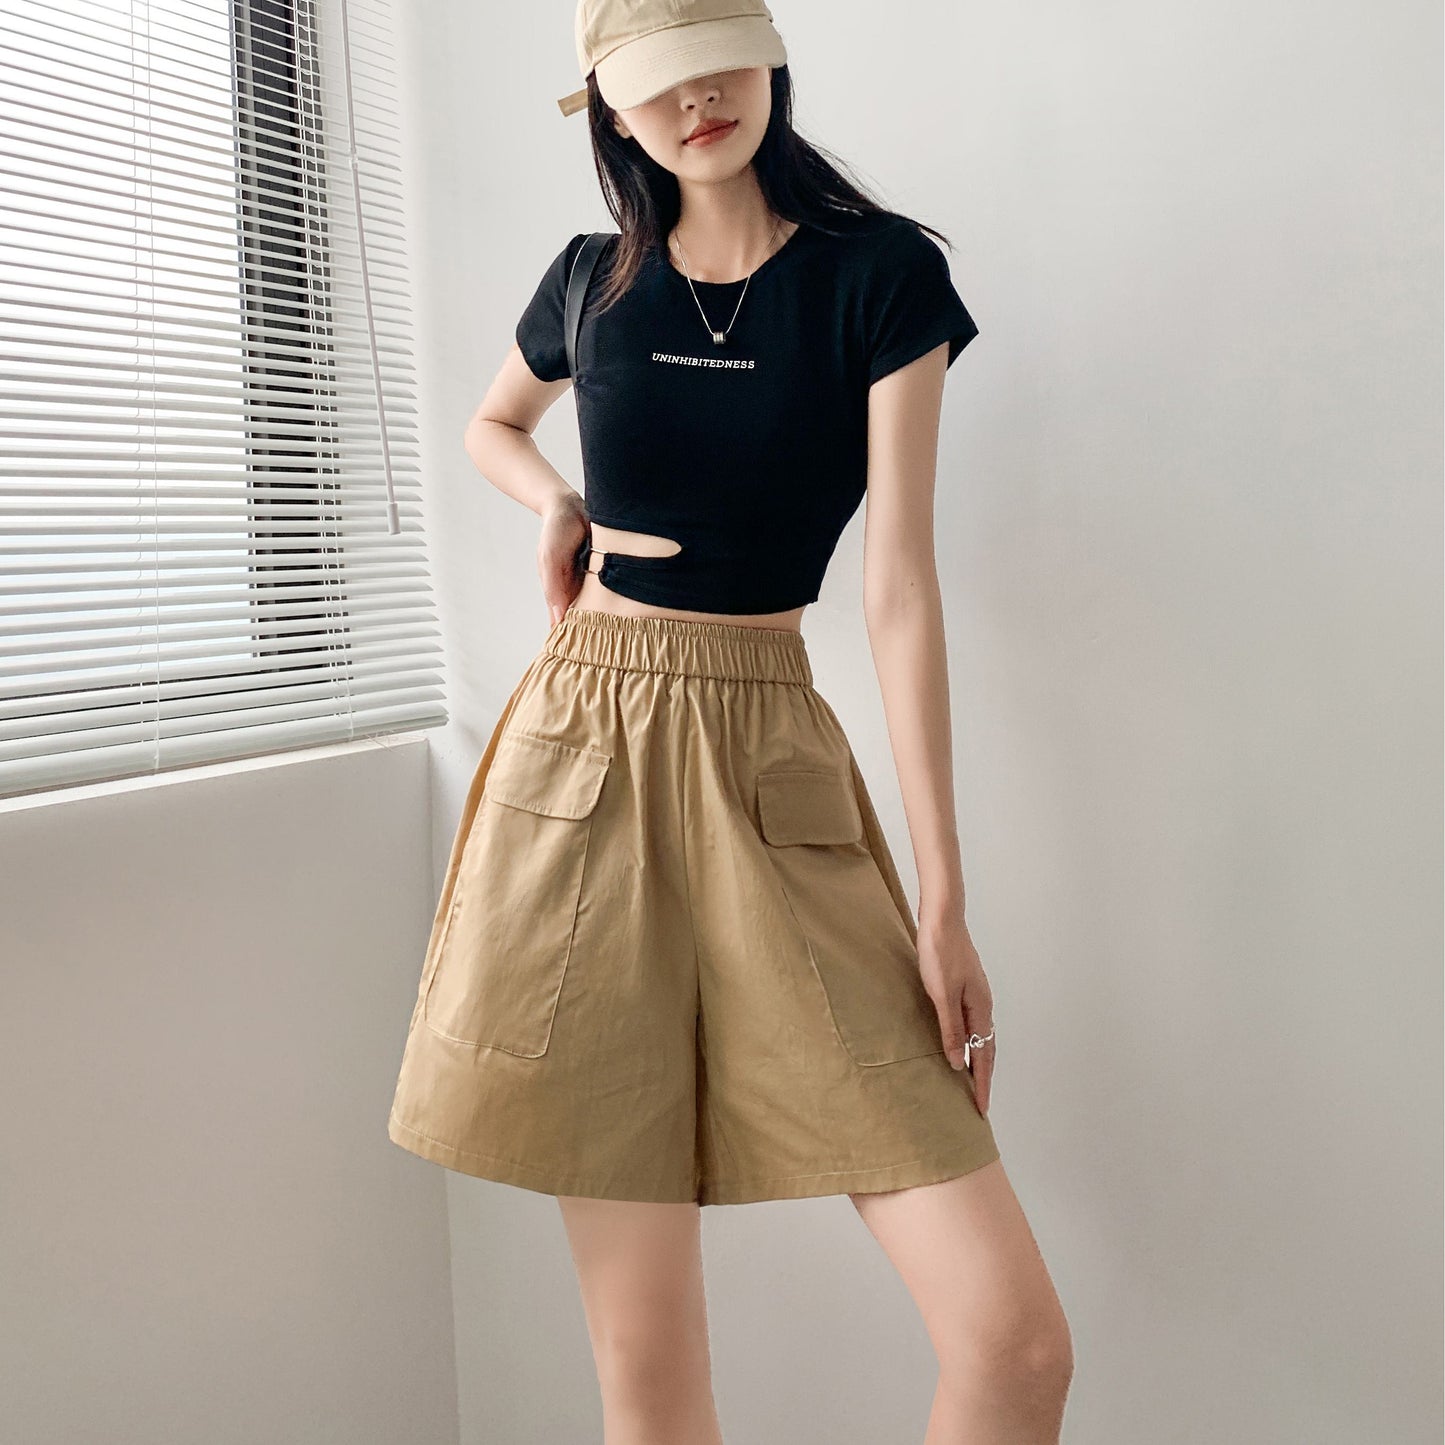 Pantalones cortos informales de talle alto y corte holgado en tela fina y sólida